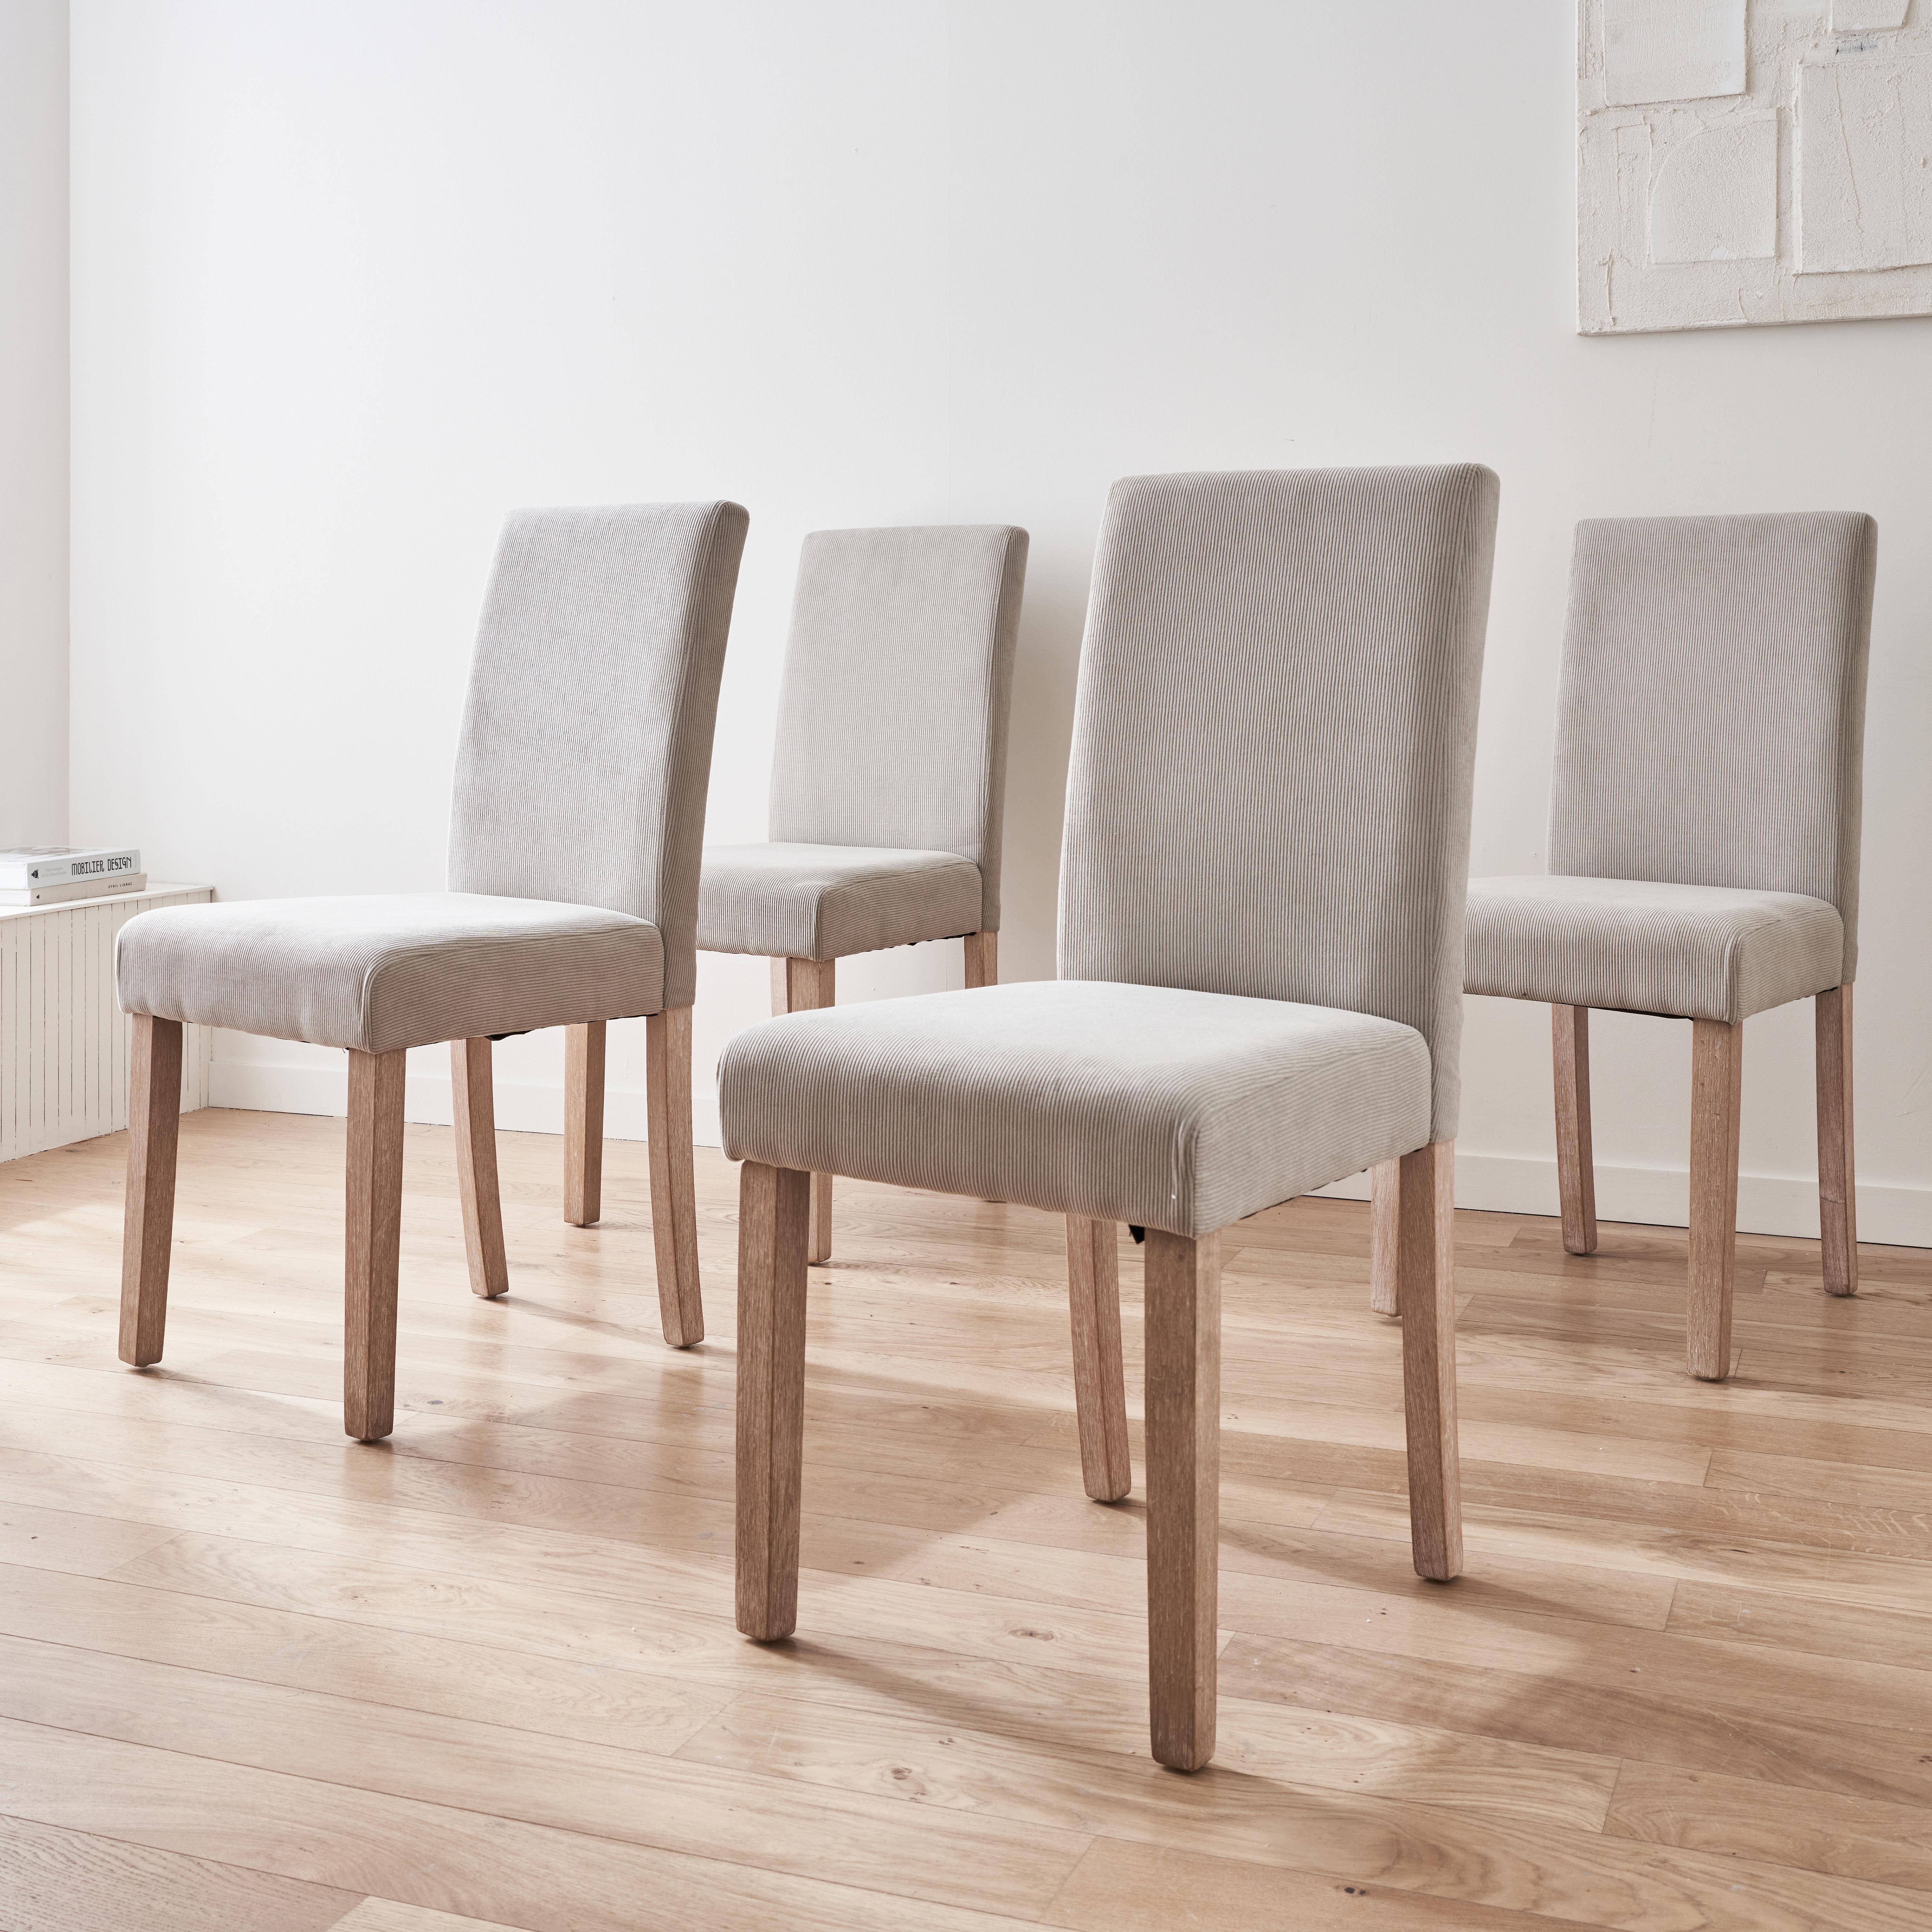 Set van 4 grijze corduroy stoelen, Rita, met witte poten van heveahout Photo1